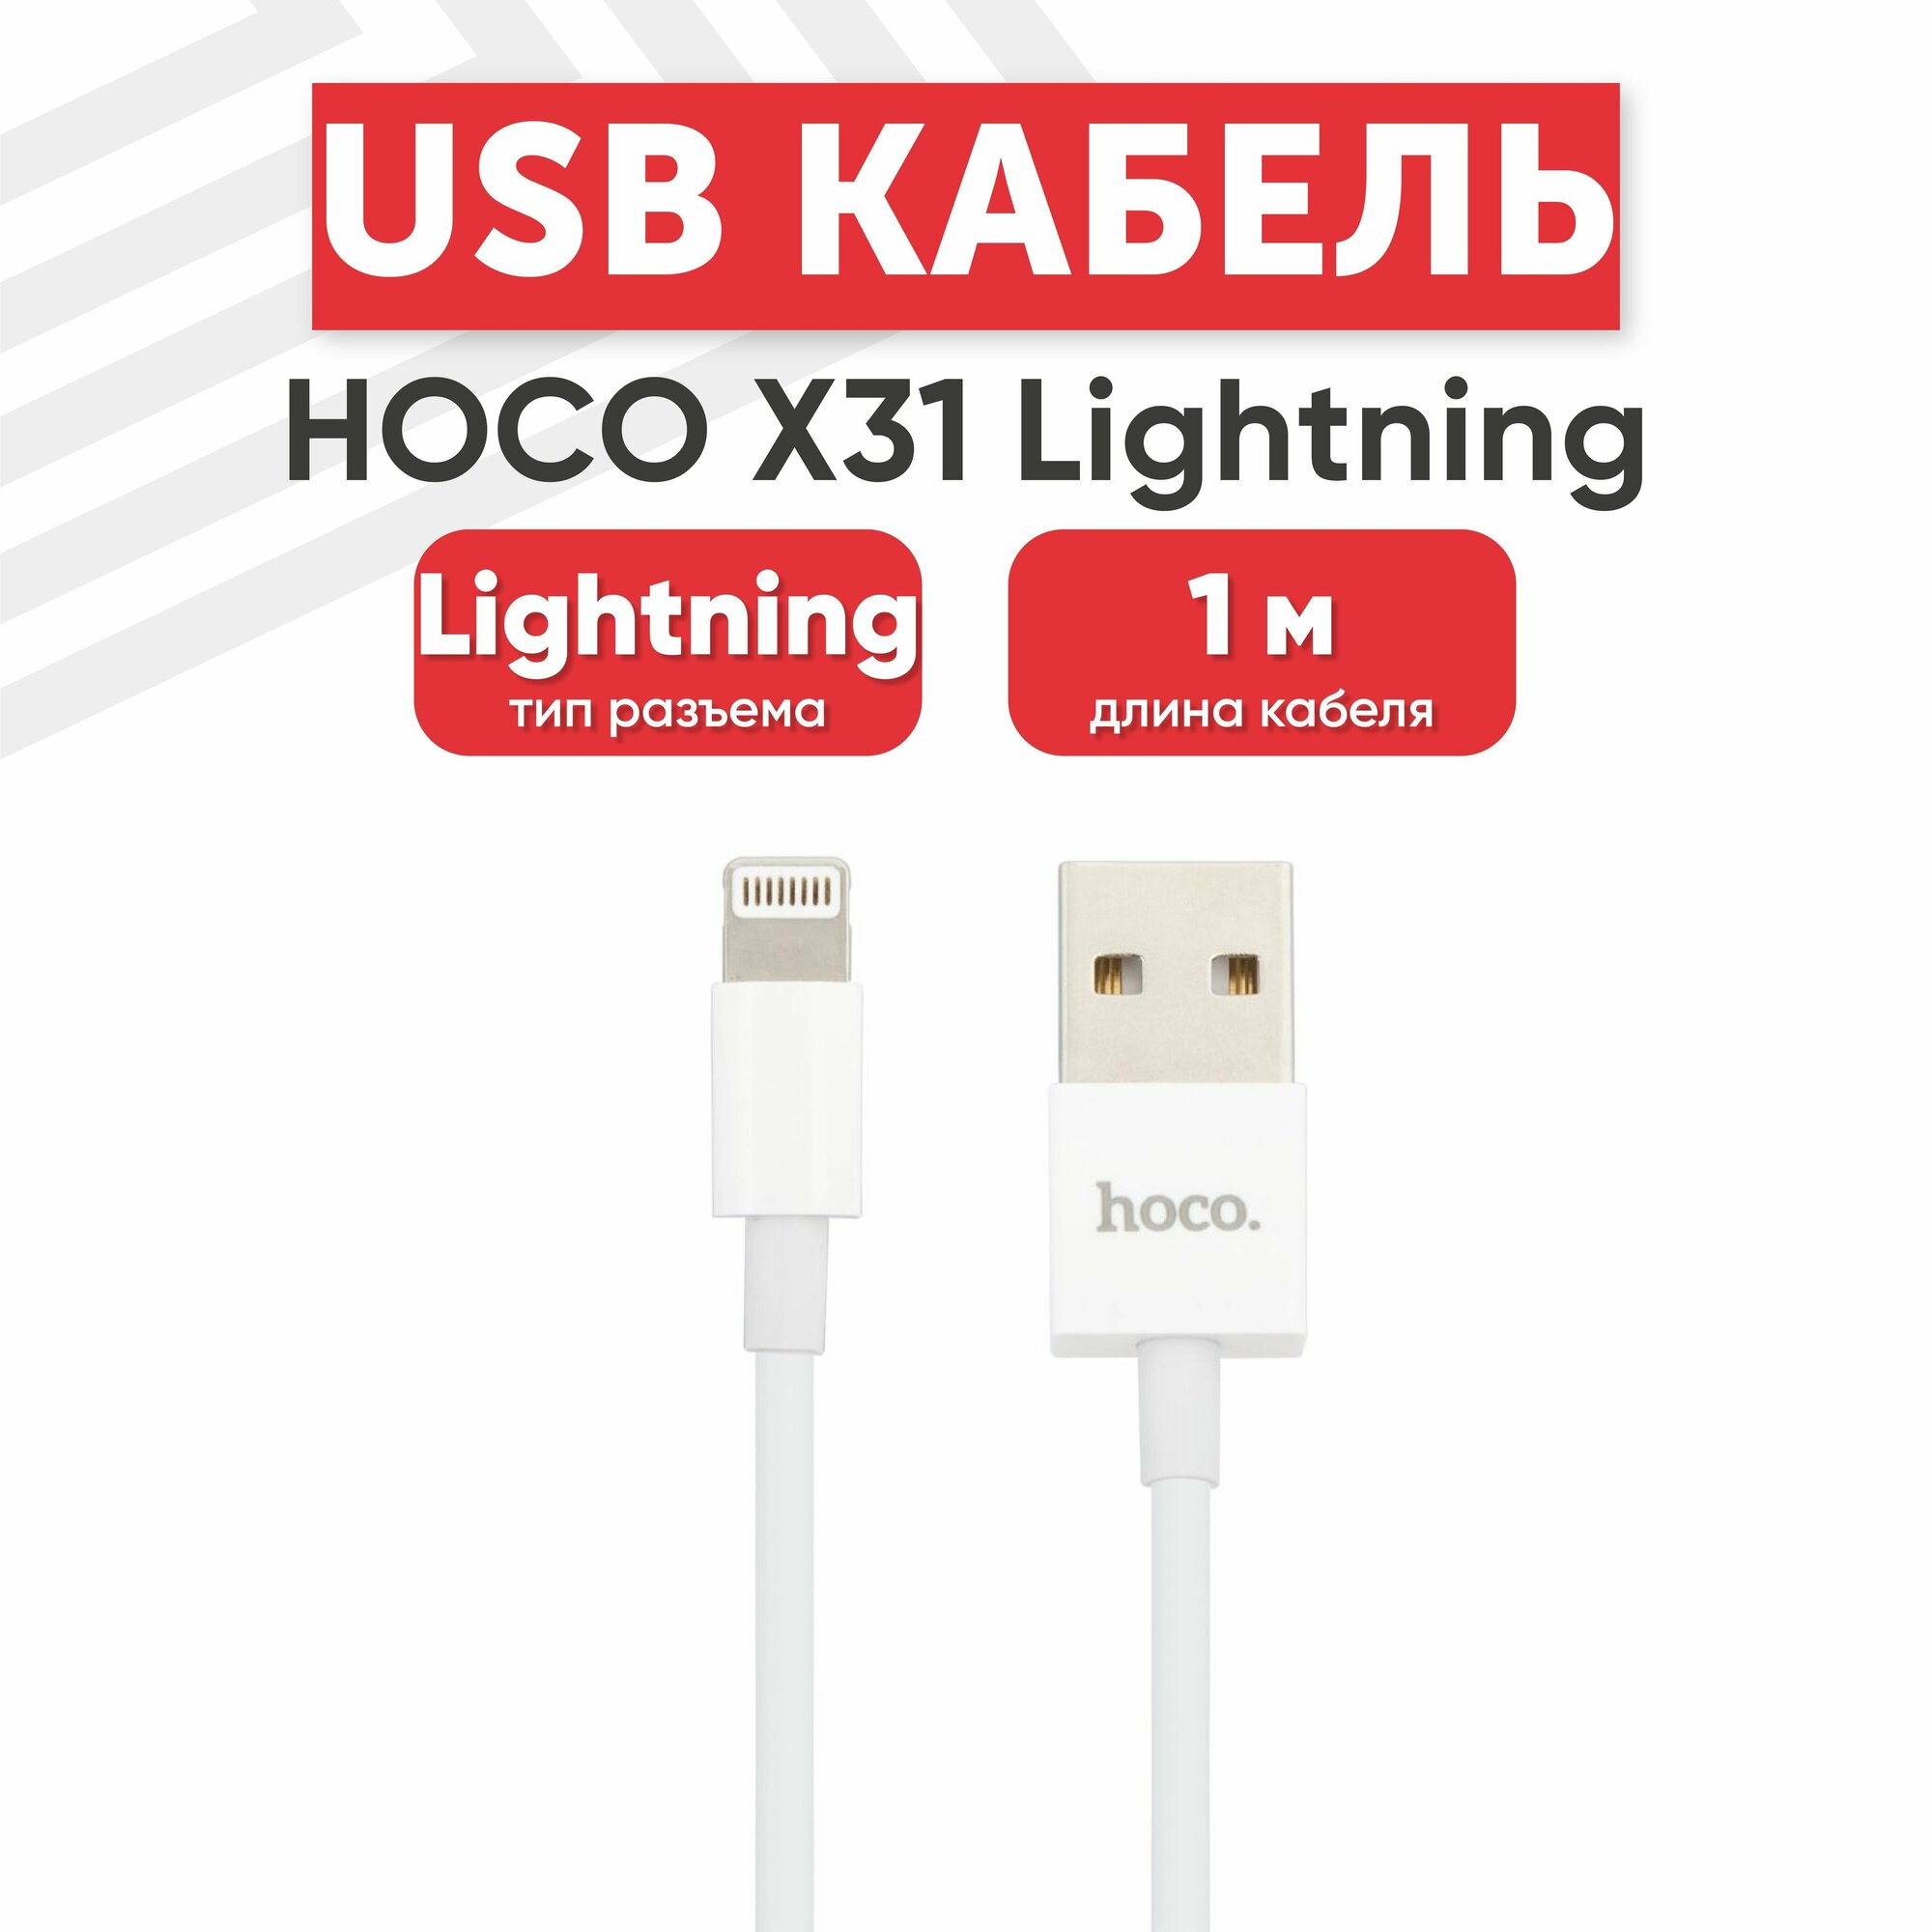 USB кабель Hoco X31 для зарядки, передачи данных, Lightning 8-pin, 2.1А, 1 метр, TPE, белый, с подставкой